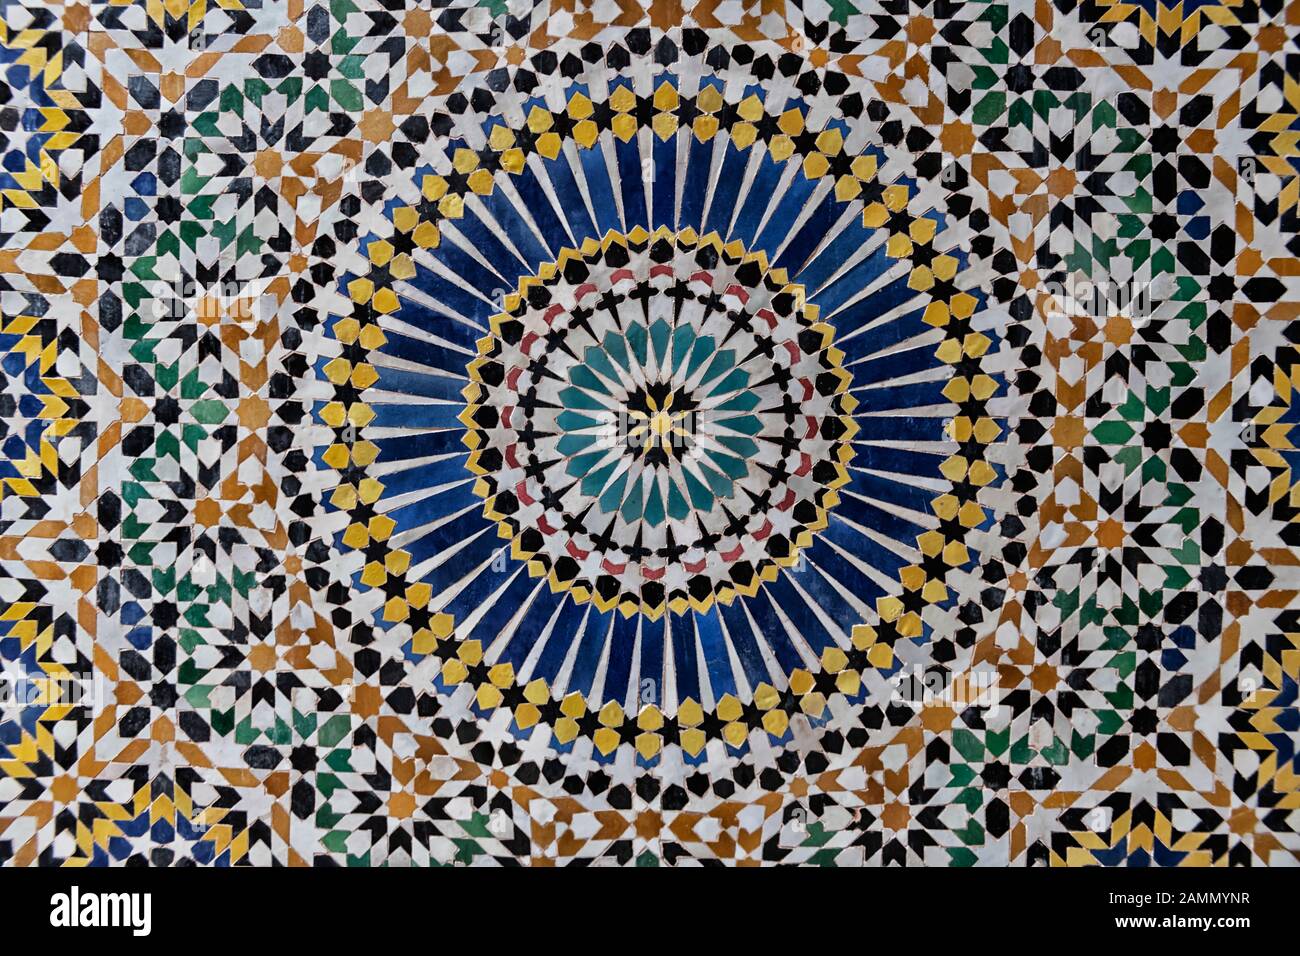 Farbenfrohes 24-faches Sternmuster in traditionell islamischem geometrischem Design aus dem Inneren von Kasbah Telouet, Marokko. Stockfoto